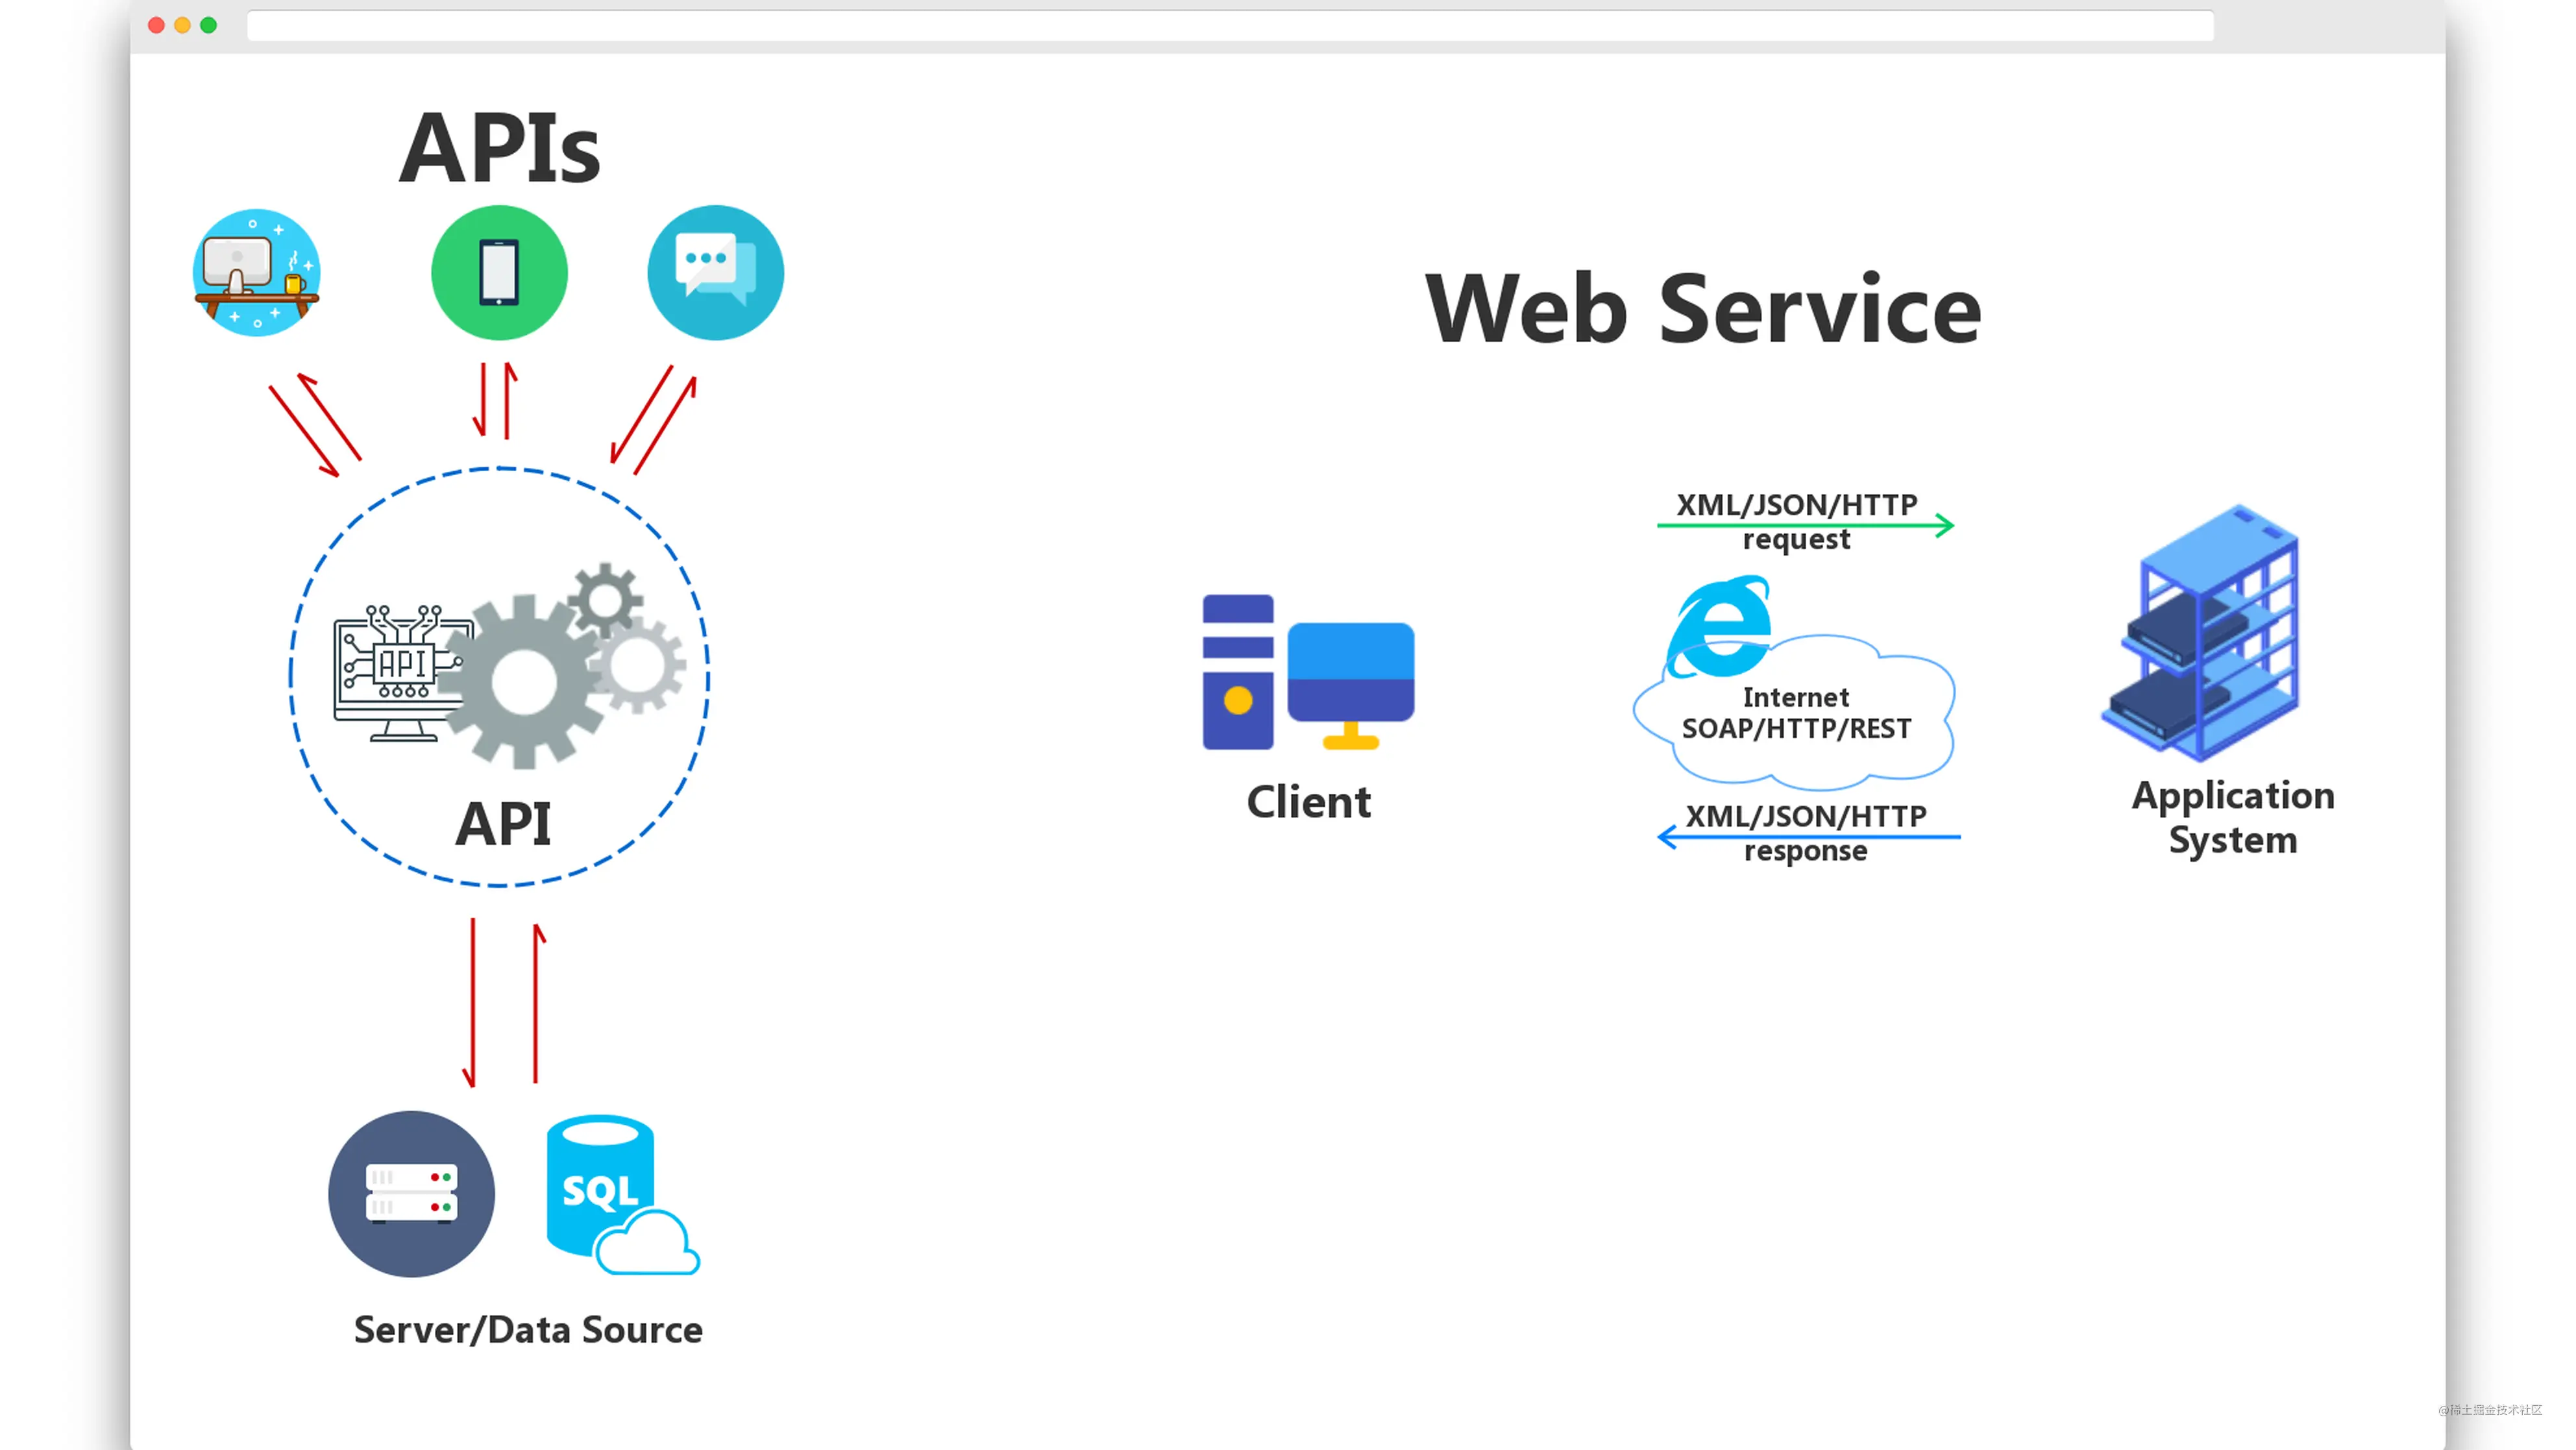 Что такое веб сервис